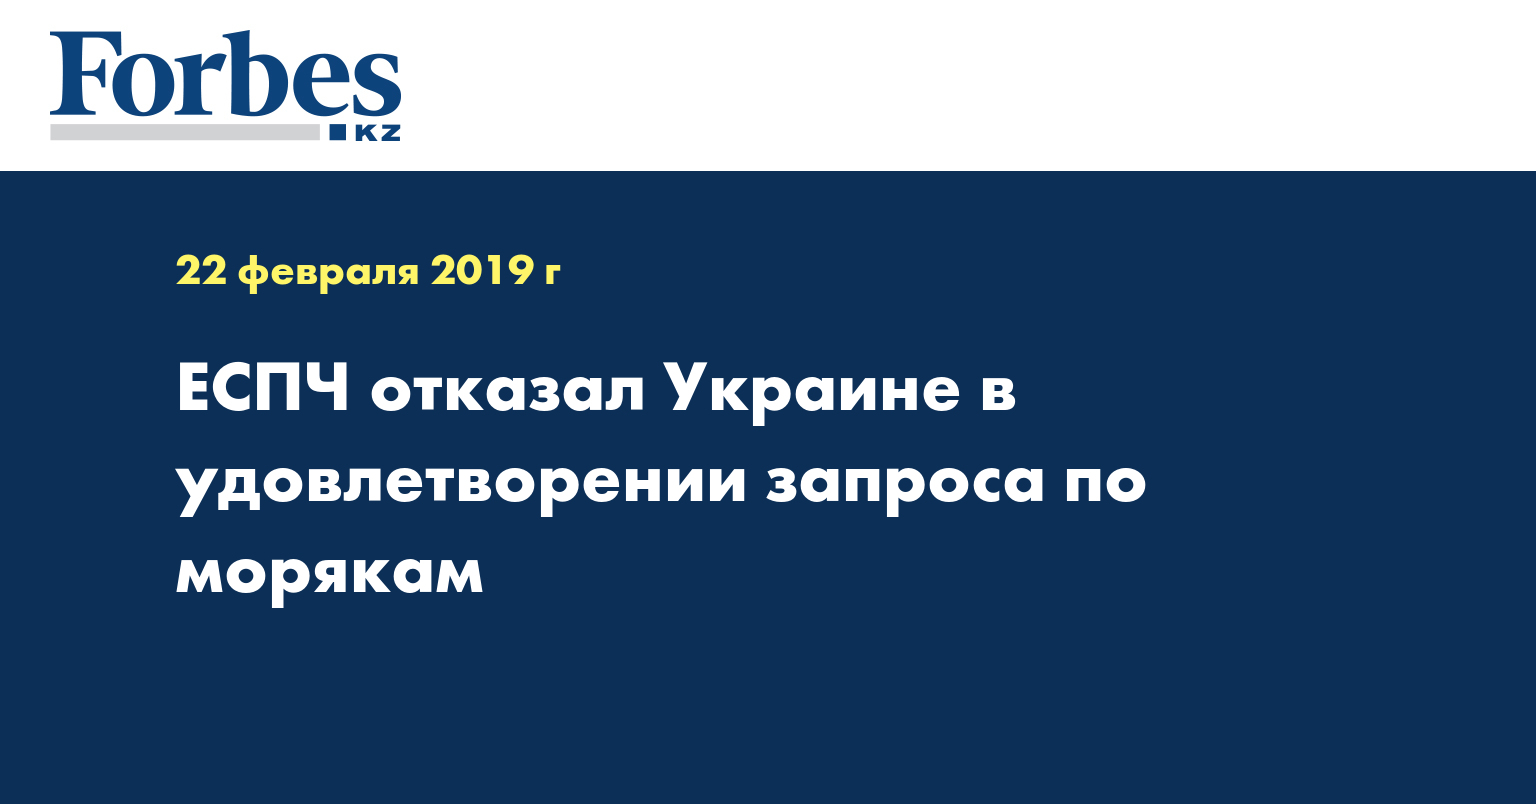 ЕСПЧ отказал Украине в удовлетворении запроса по морякам